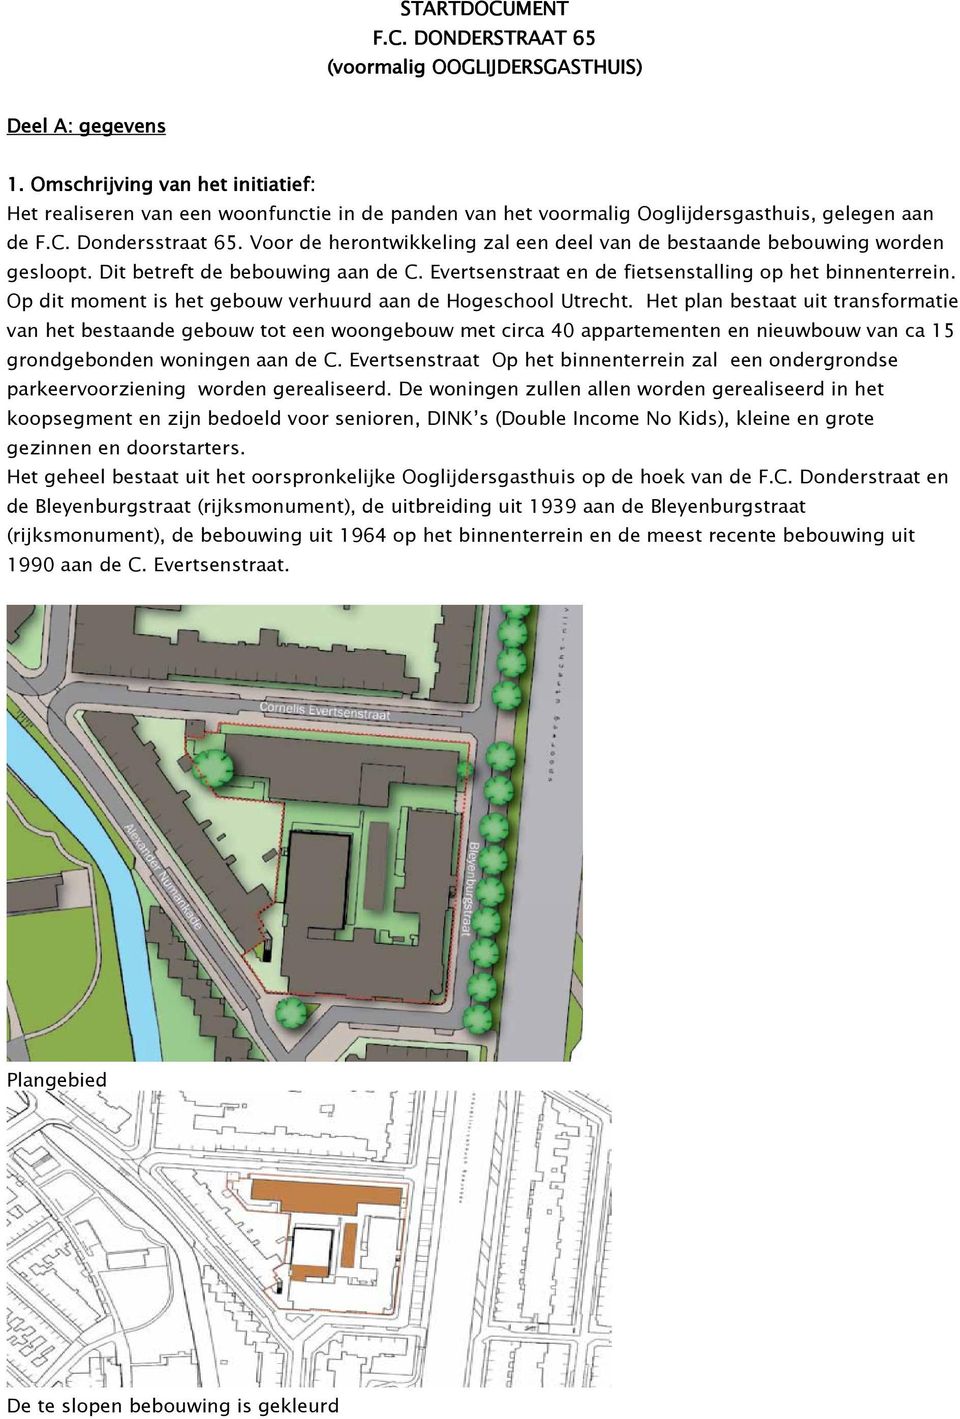 Voor de herontwikkeling zal een deel van de bestaande bebouwing worden gesloopt. Dit betreft de bebouwing aan de C. Evertsenstraat en de fietsenstalling op het binnenterrein.